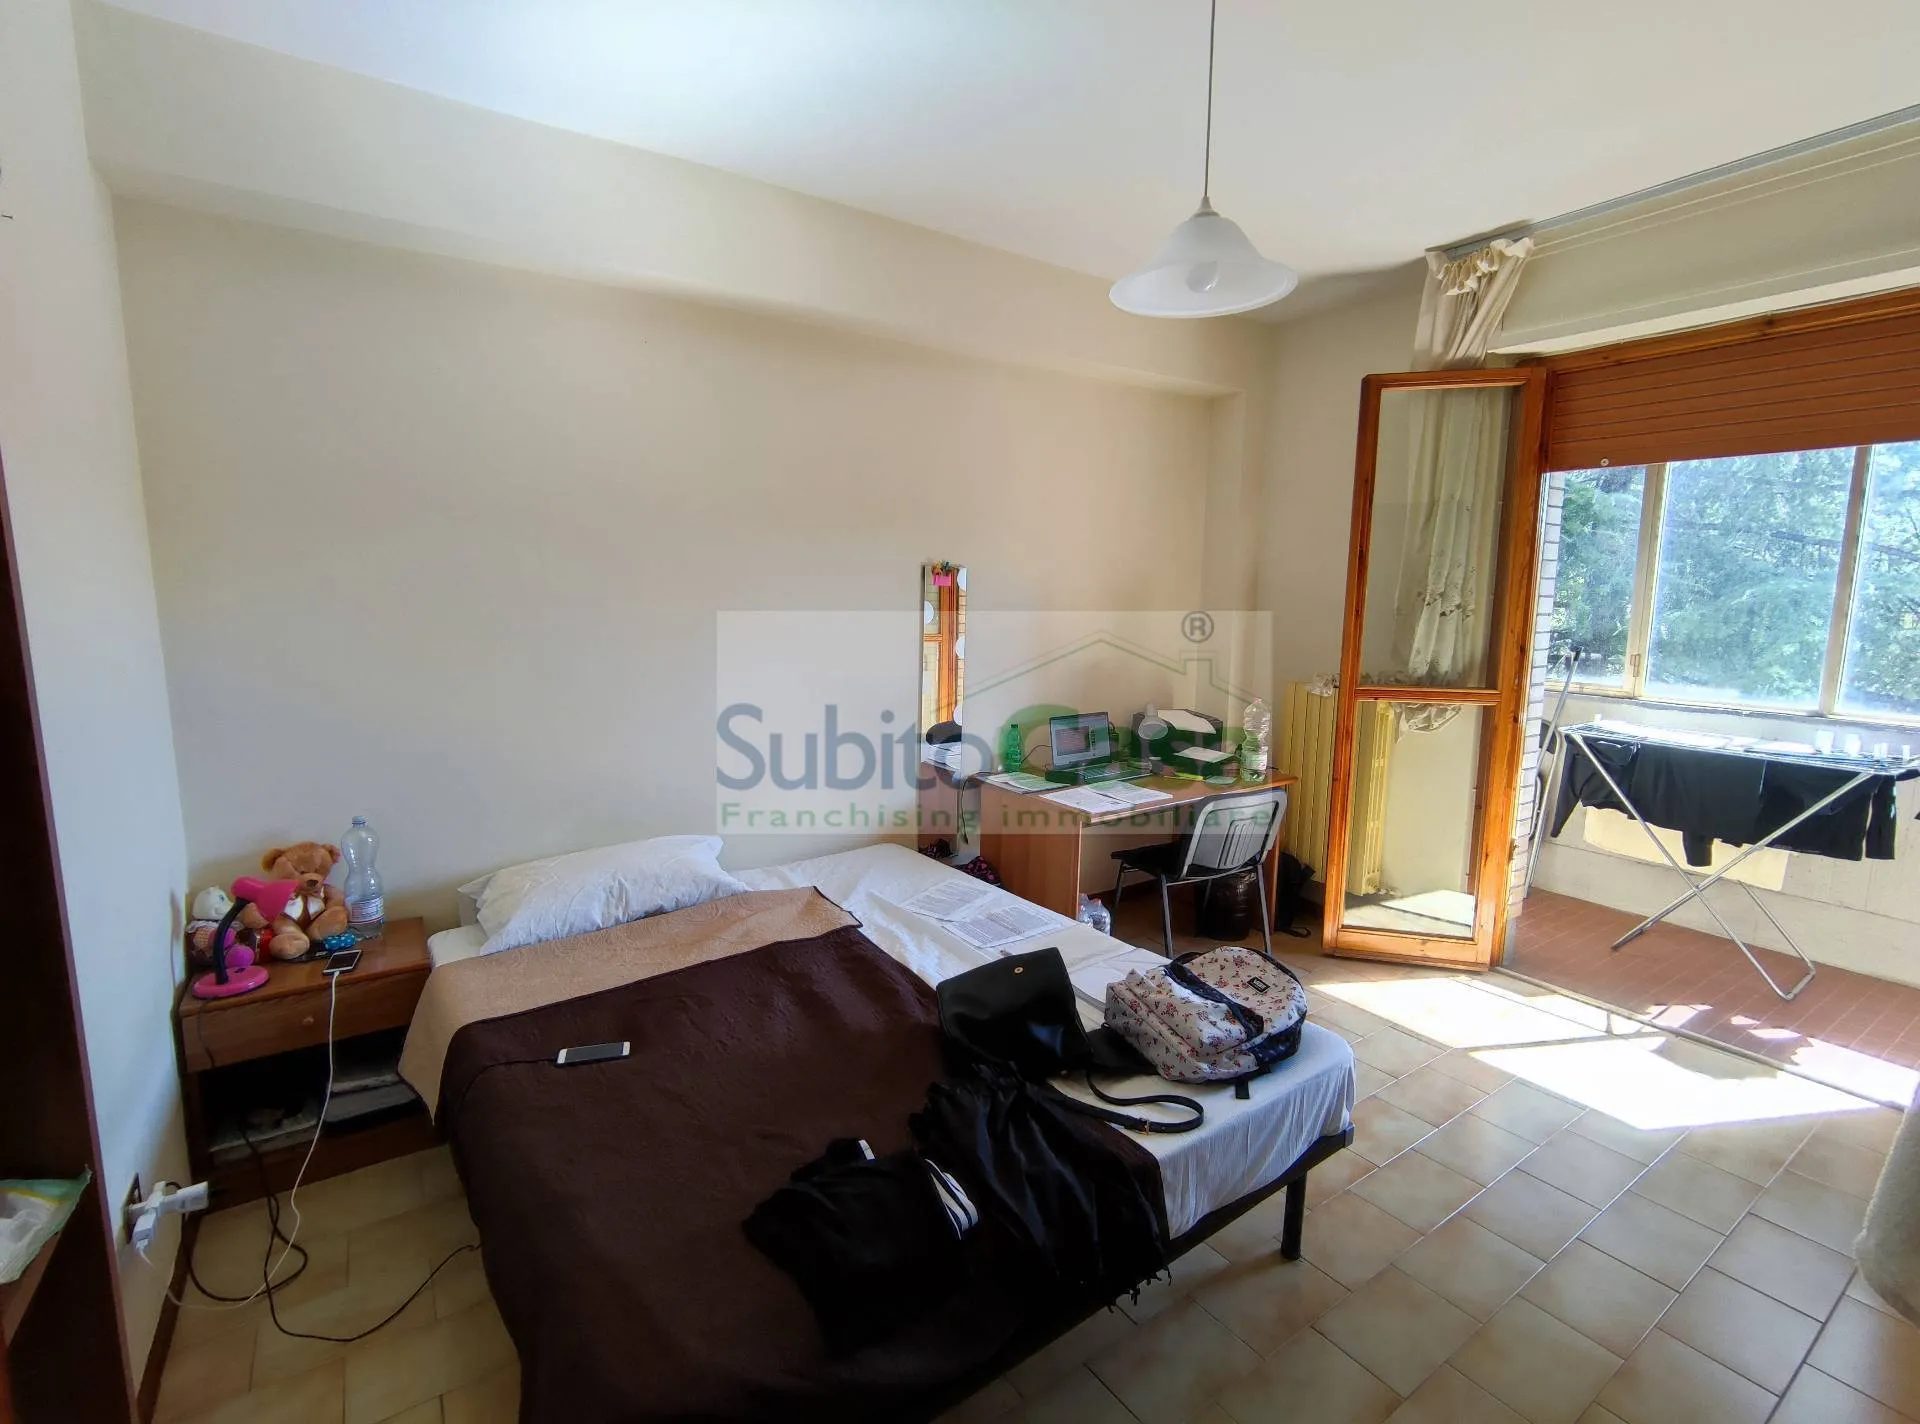 Immagine per Appartamento in affitto a Chieti Via Colle Dell'Ara